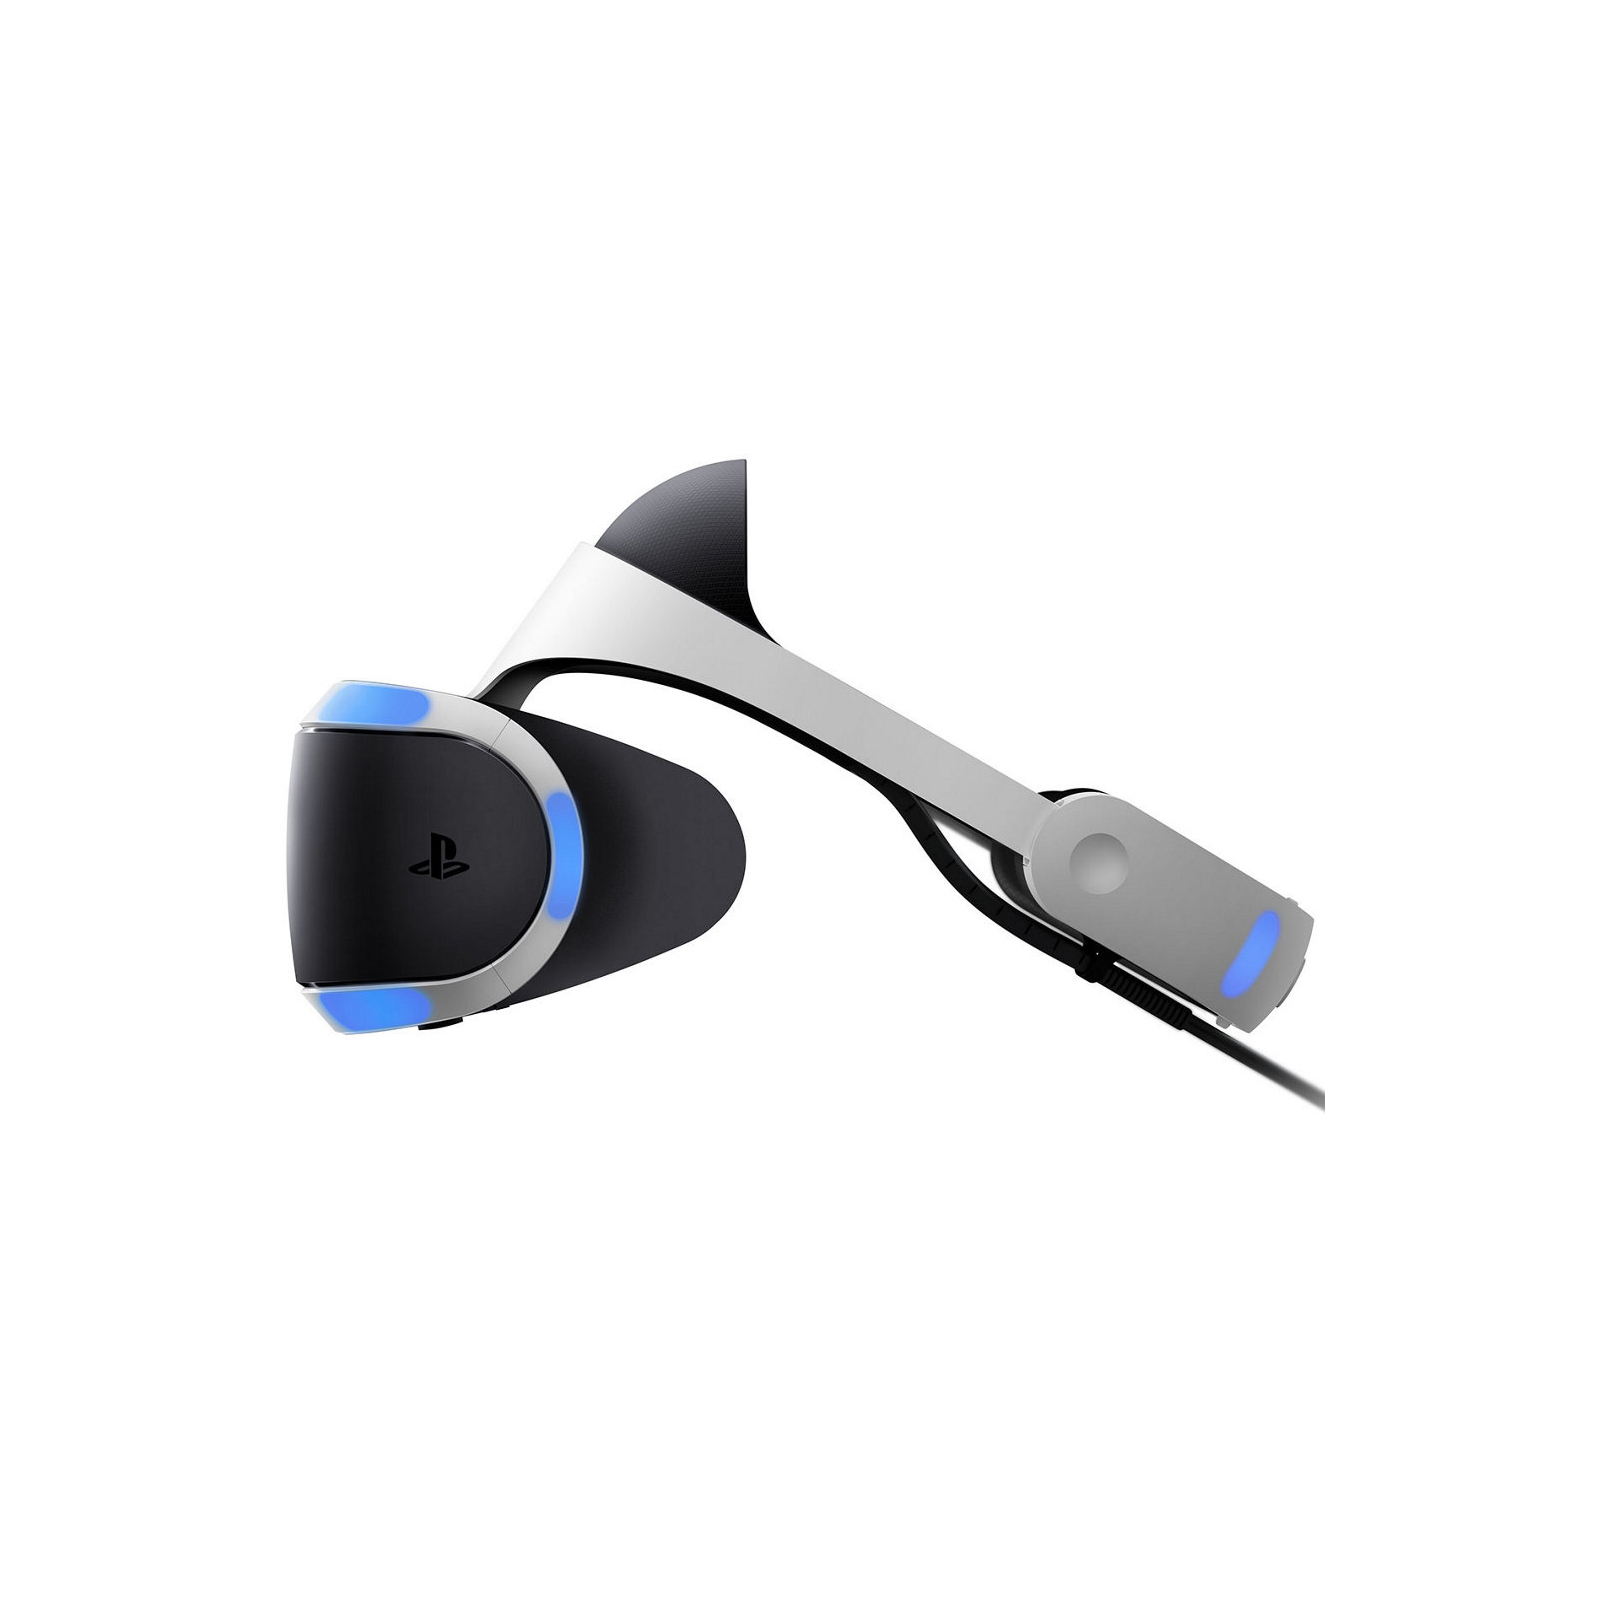 Очки виртуальной реальности Sony PlayStation VR изображение 4